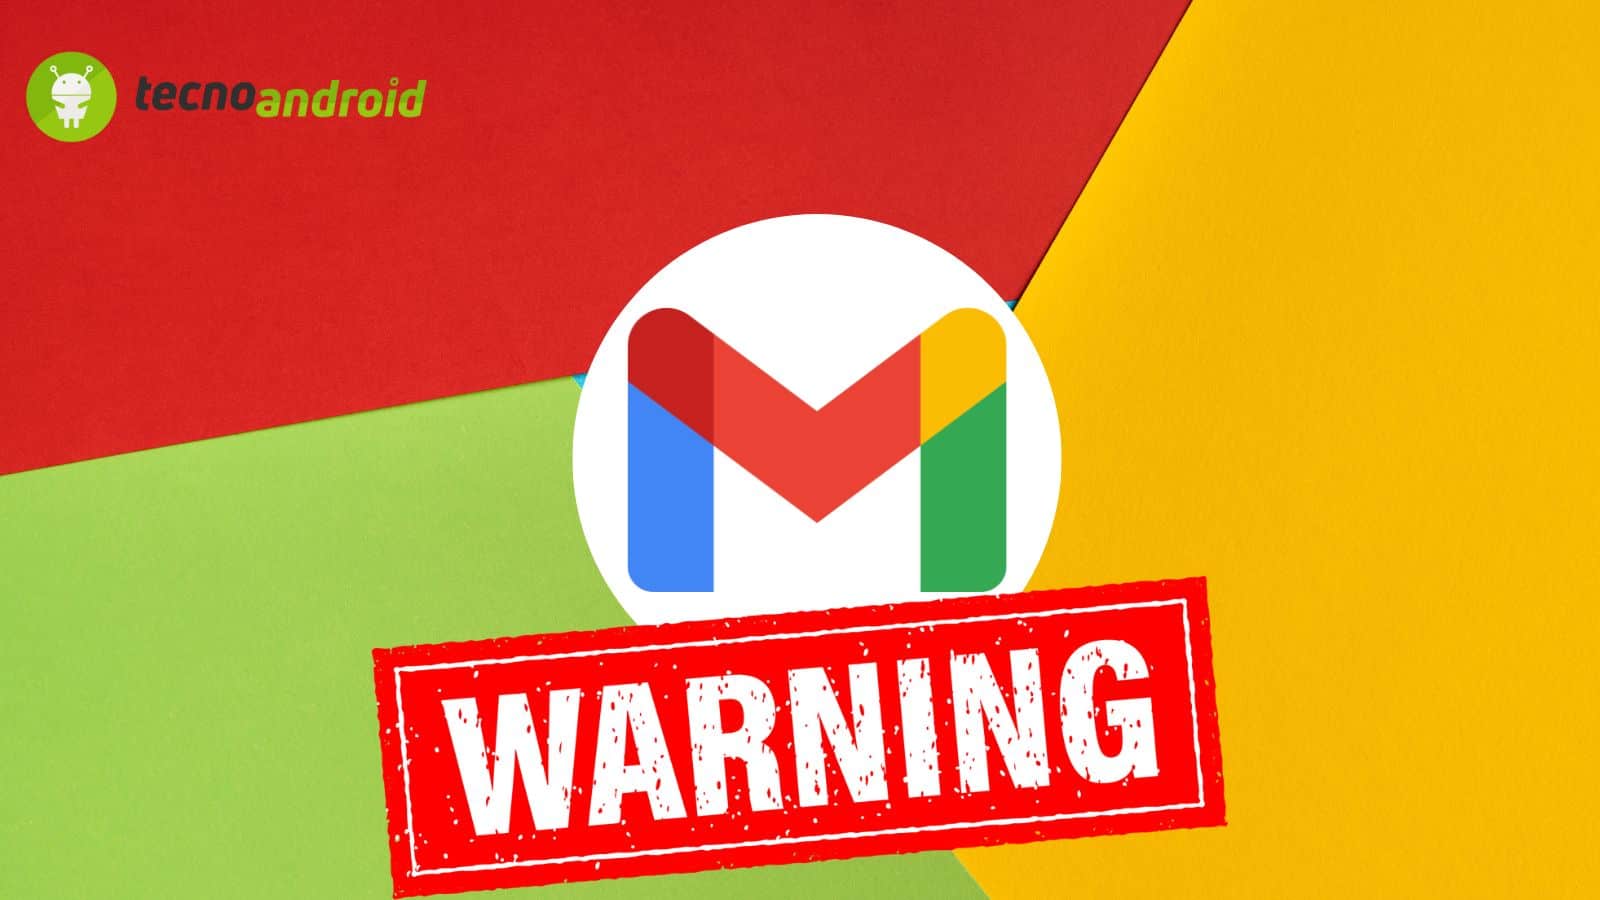 Il nuovo attacco phishing che mette in pericolo gli account Gmail